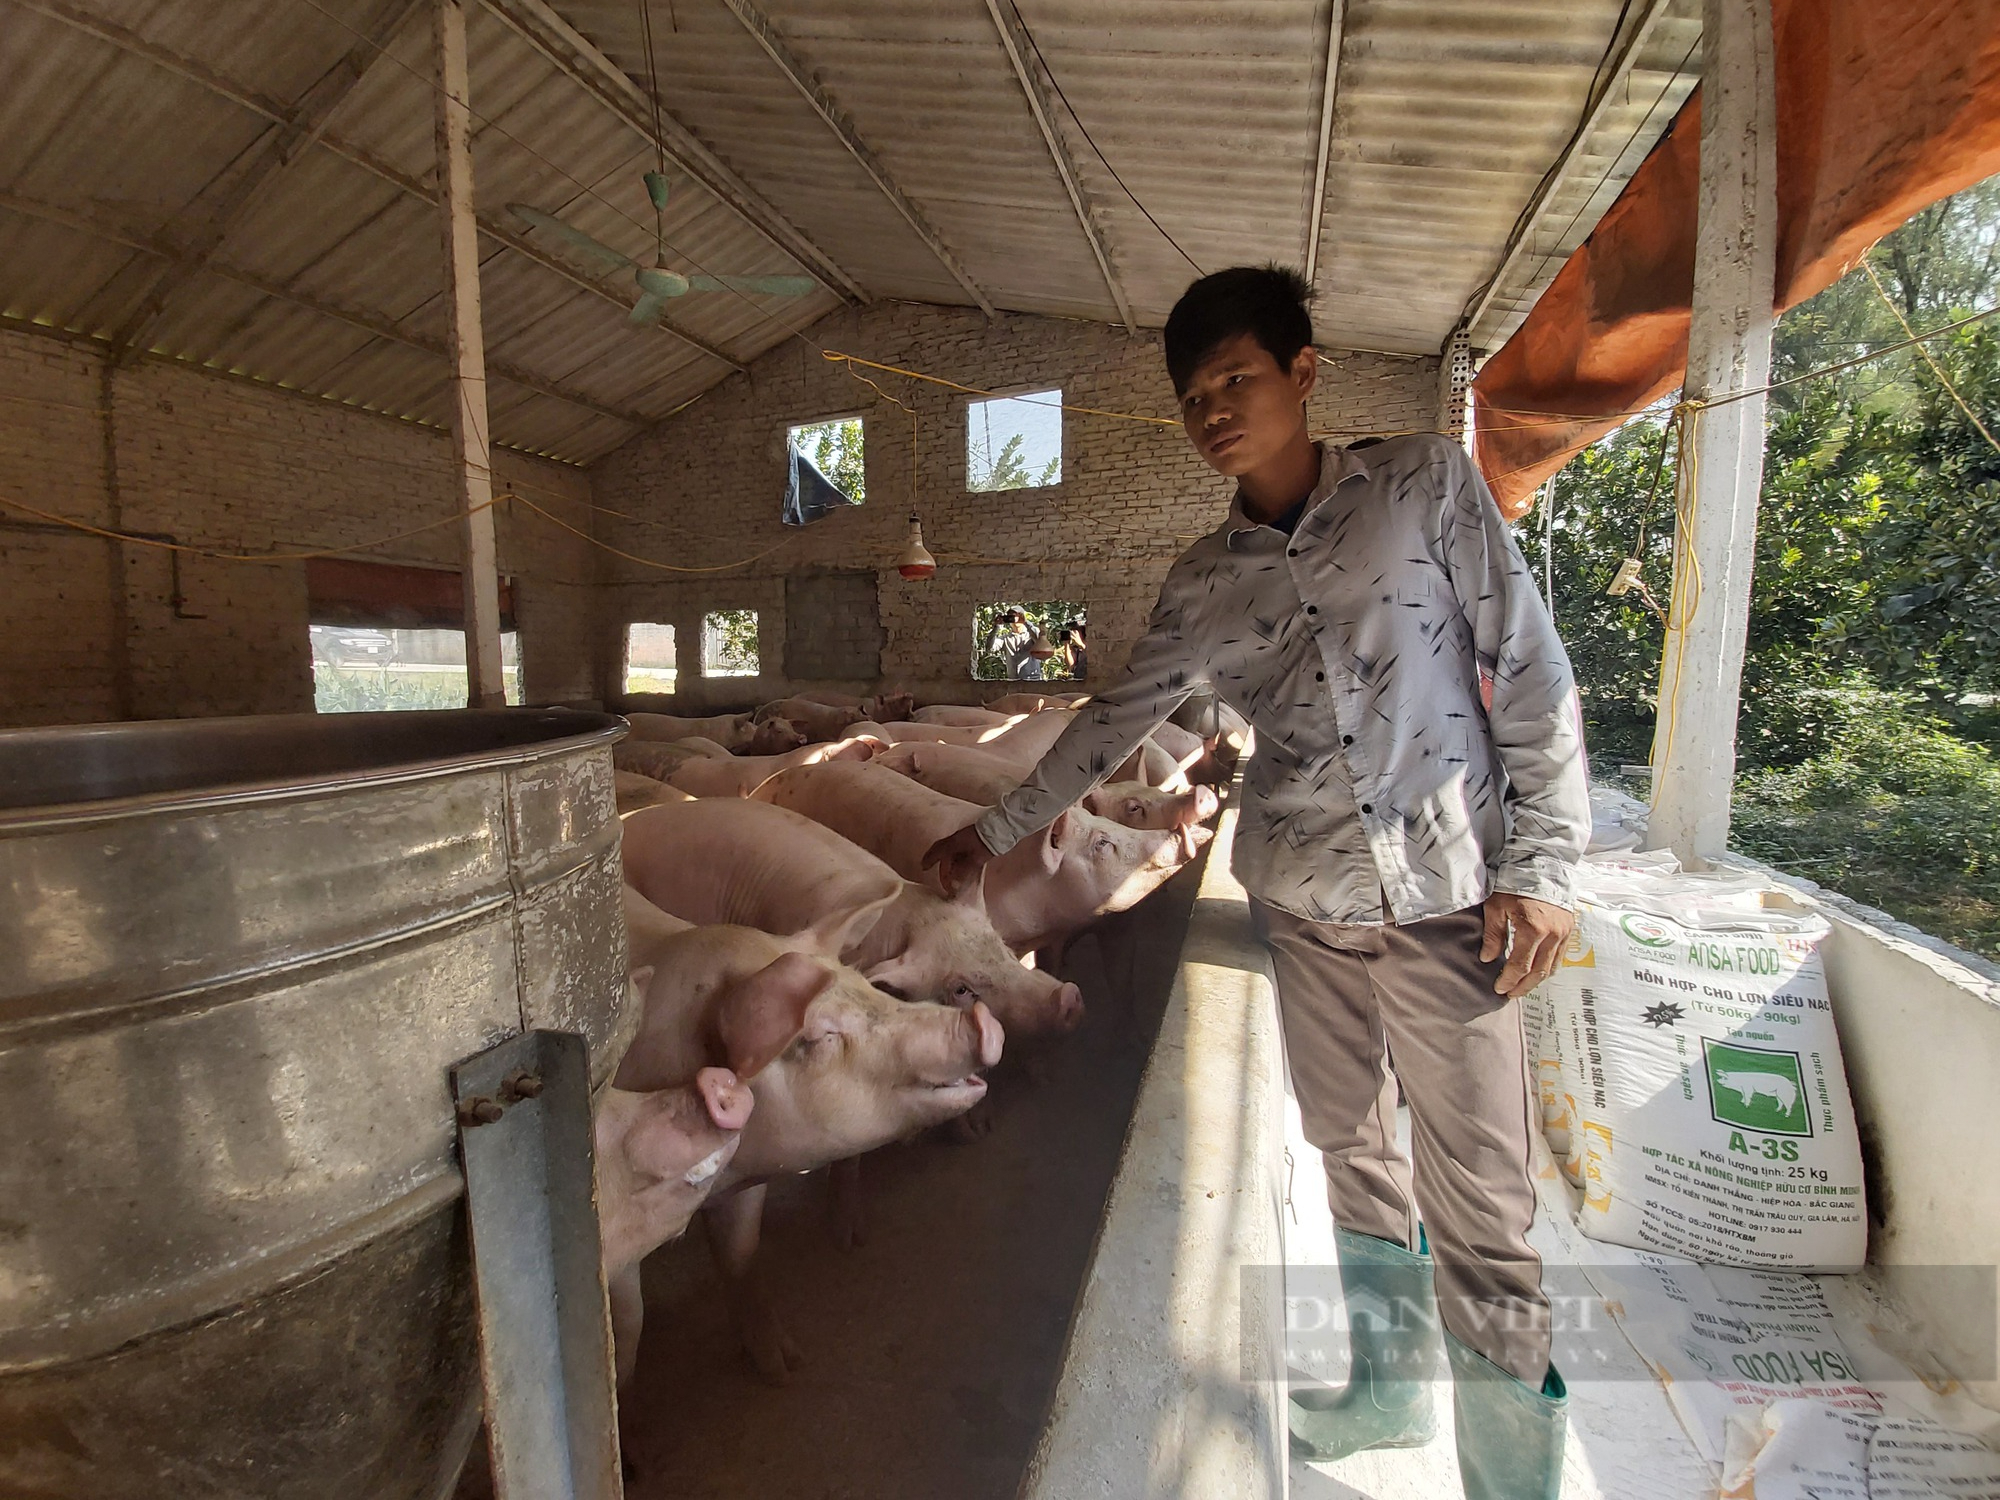 Giá lợn hơi hôm nay: Miền Bắc có nơi cao nhất 69.000 đồng/kg, miền Nam 68.000 đồng/kg...nhưng người chăn nuôi vẫn chưa lãi nhiều - Ảnh 2.